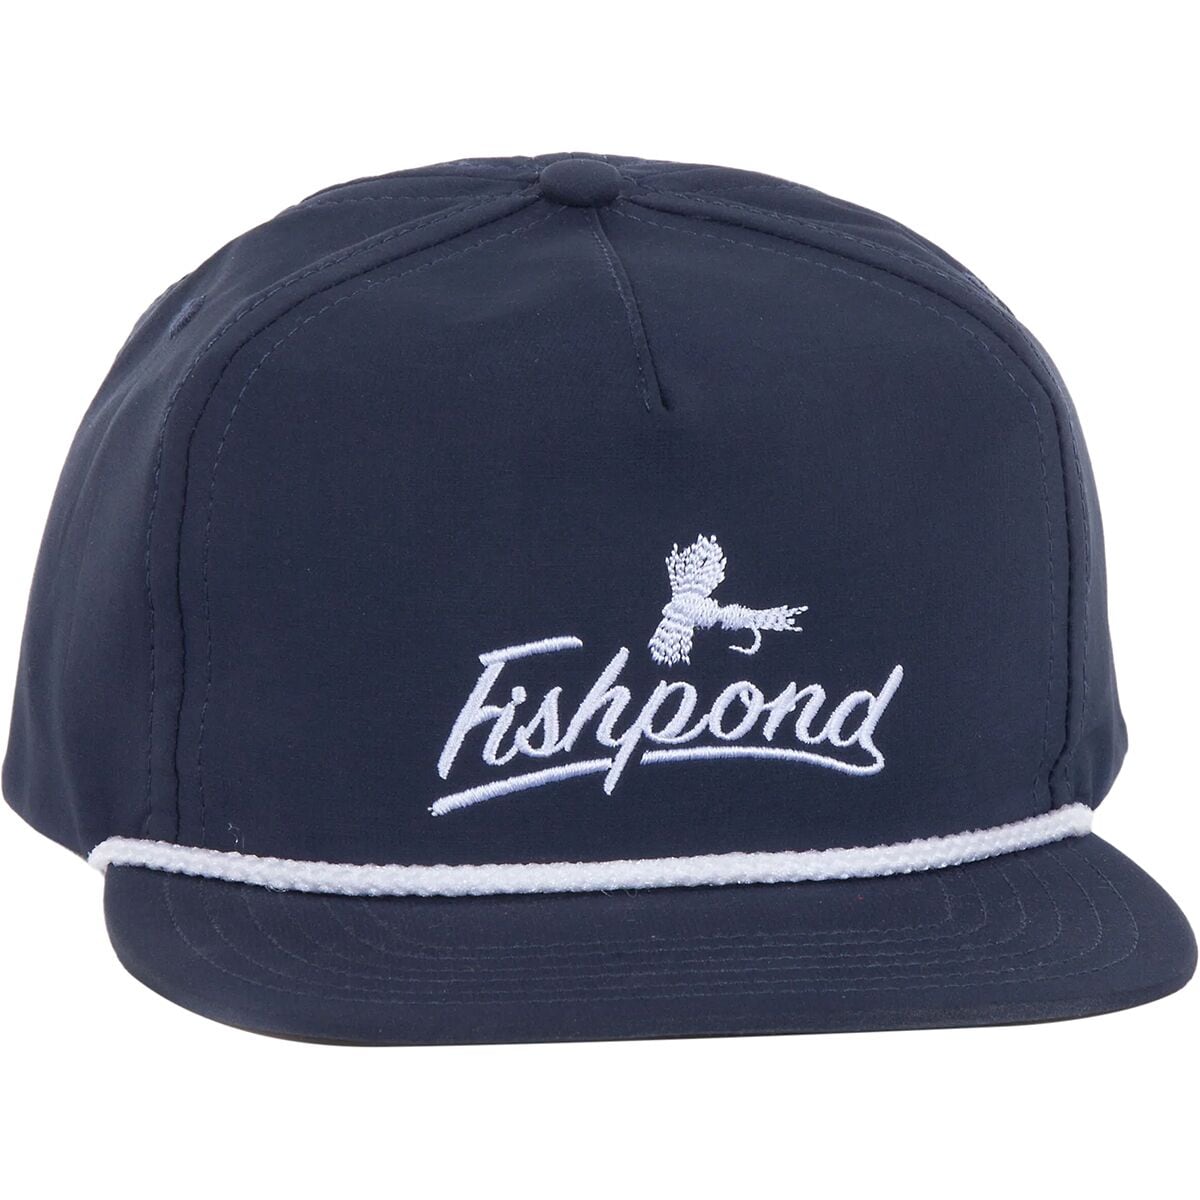 Fishpond North Fork Hat